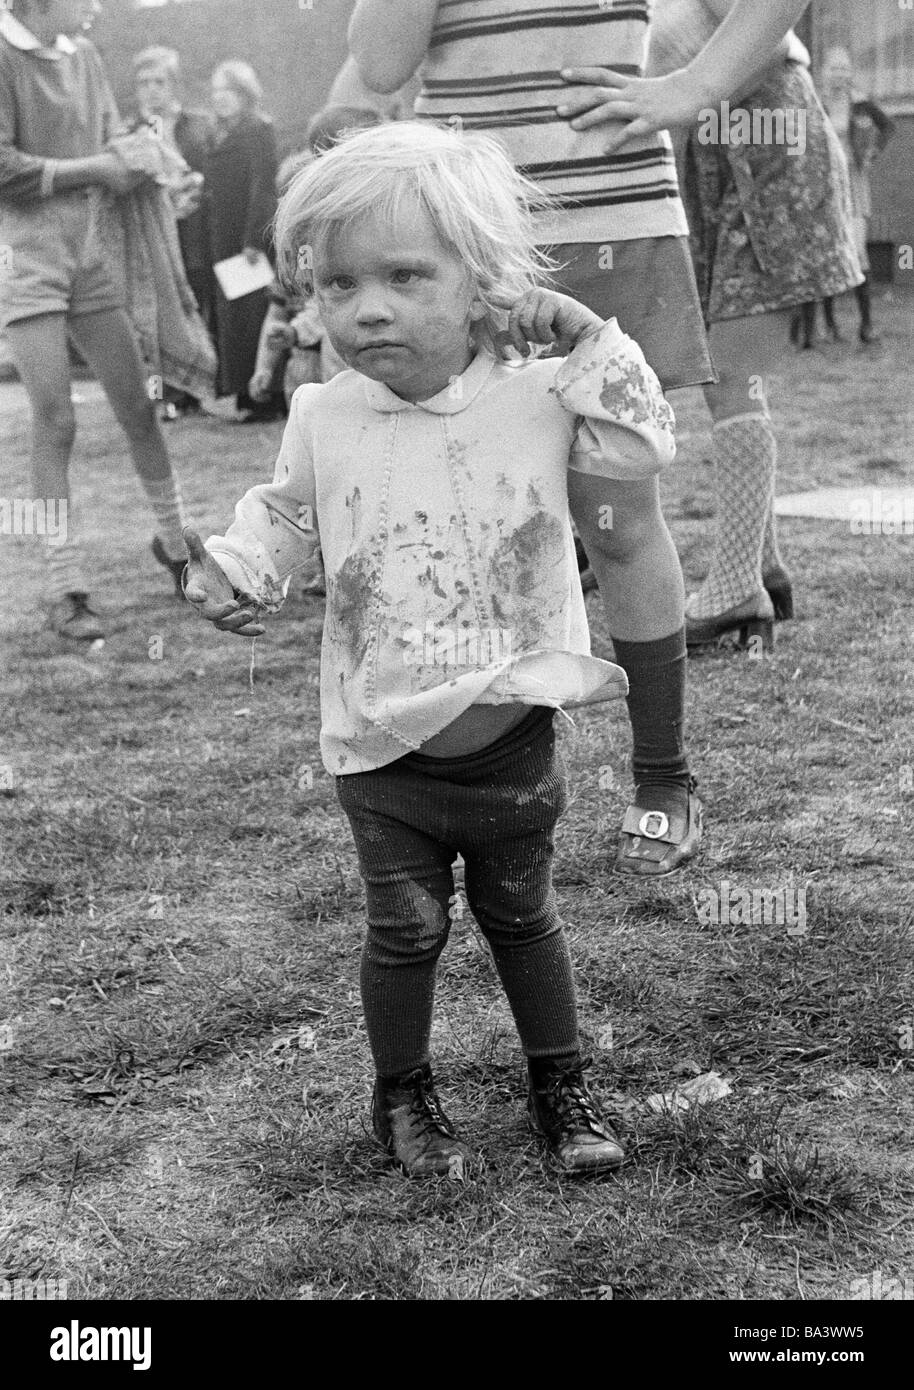 Negli anni settanta, foto in bianco e nero, persone, bambini, bambina, ritratto, bambino di strada, sporco unkemptly, di età compresa tra i 4 ed i 6 anni Foto Stock